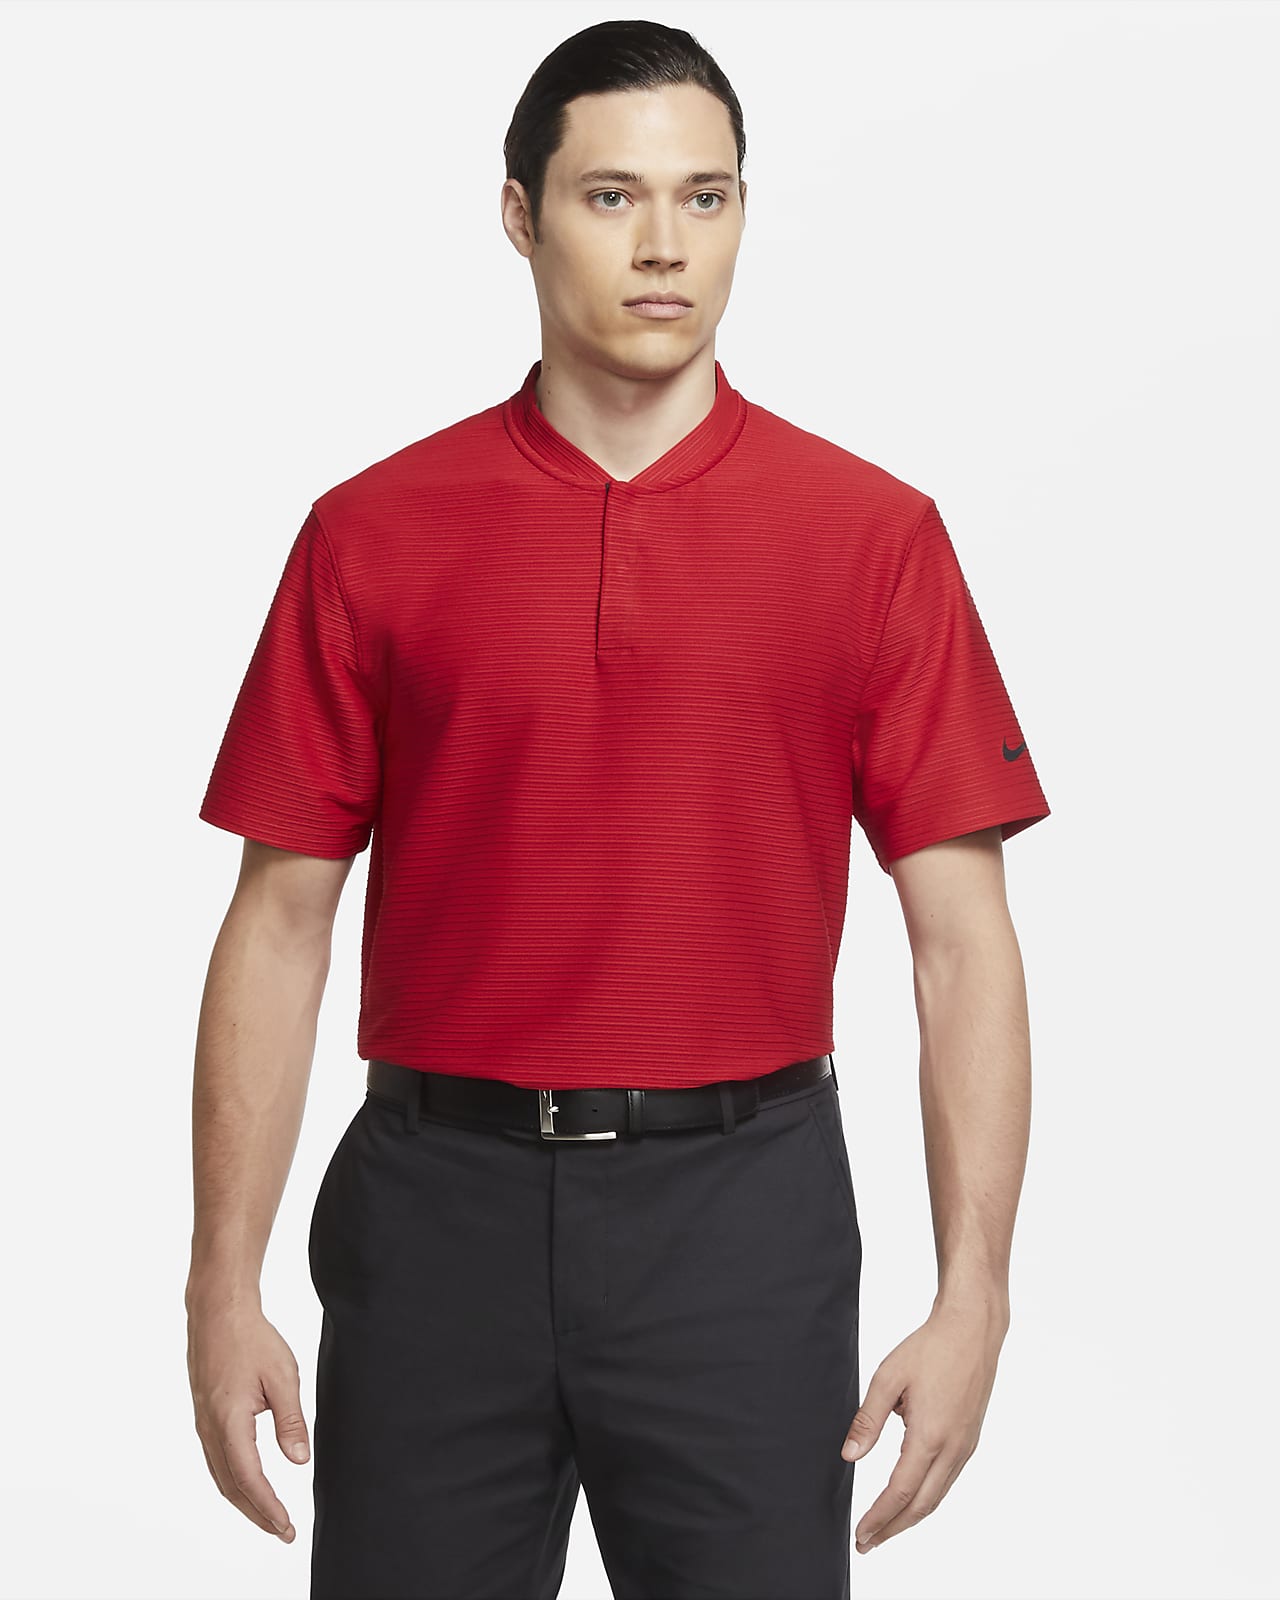 red tiger woods golf shirt